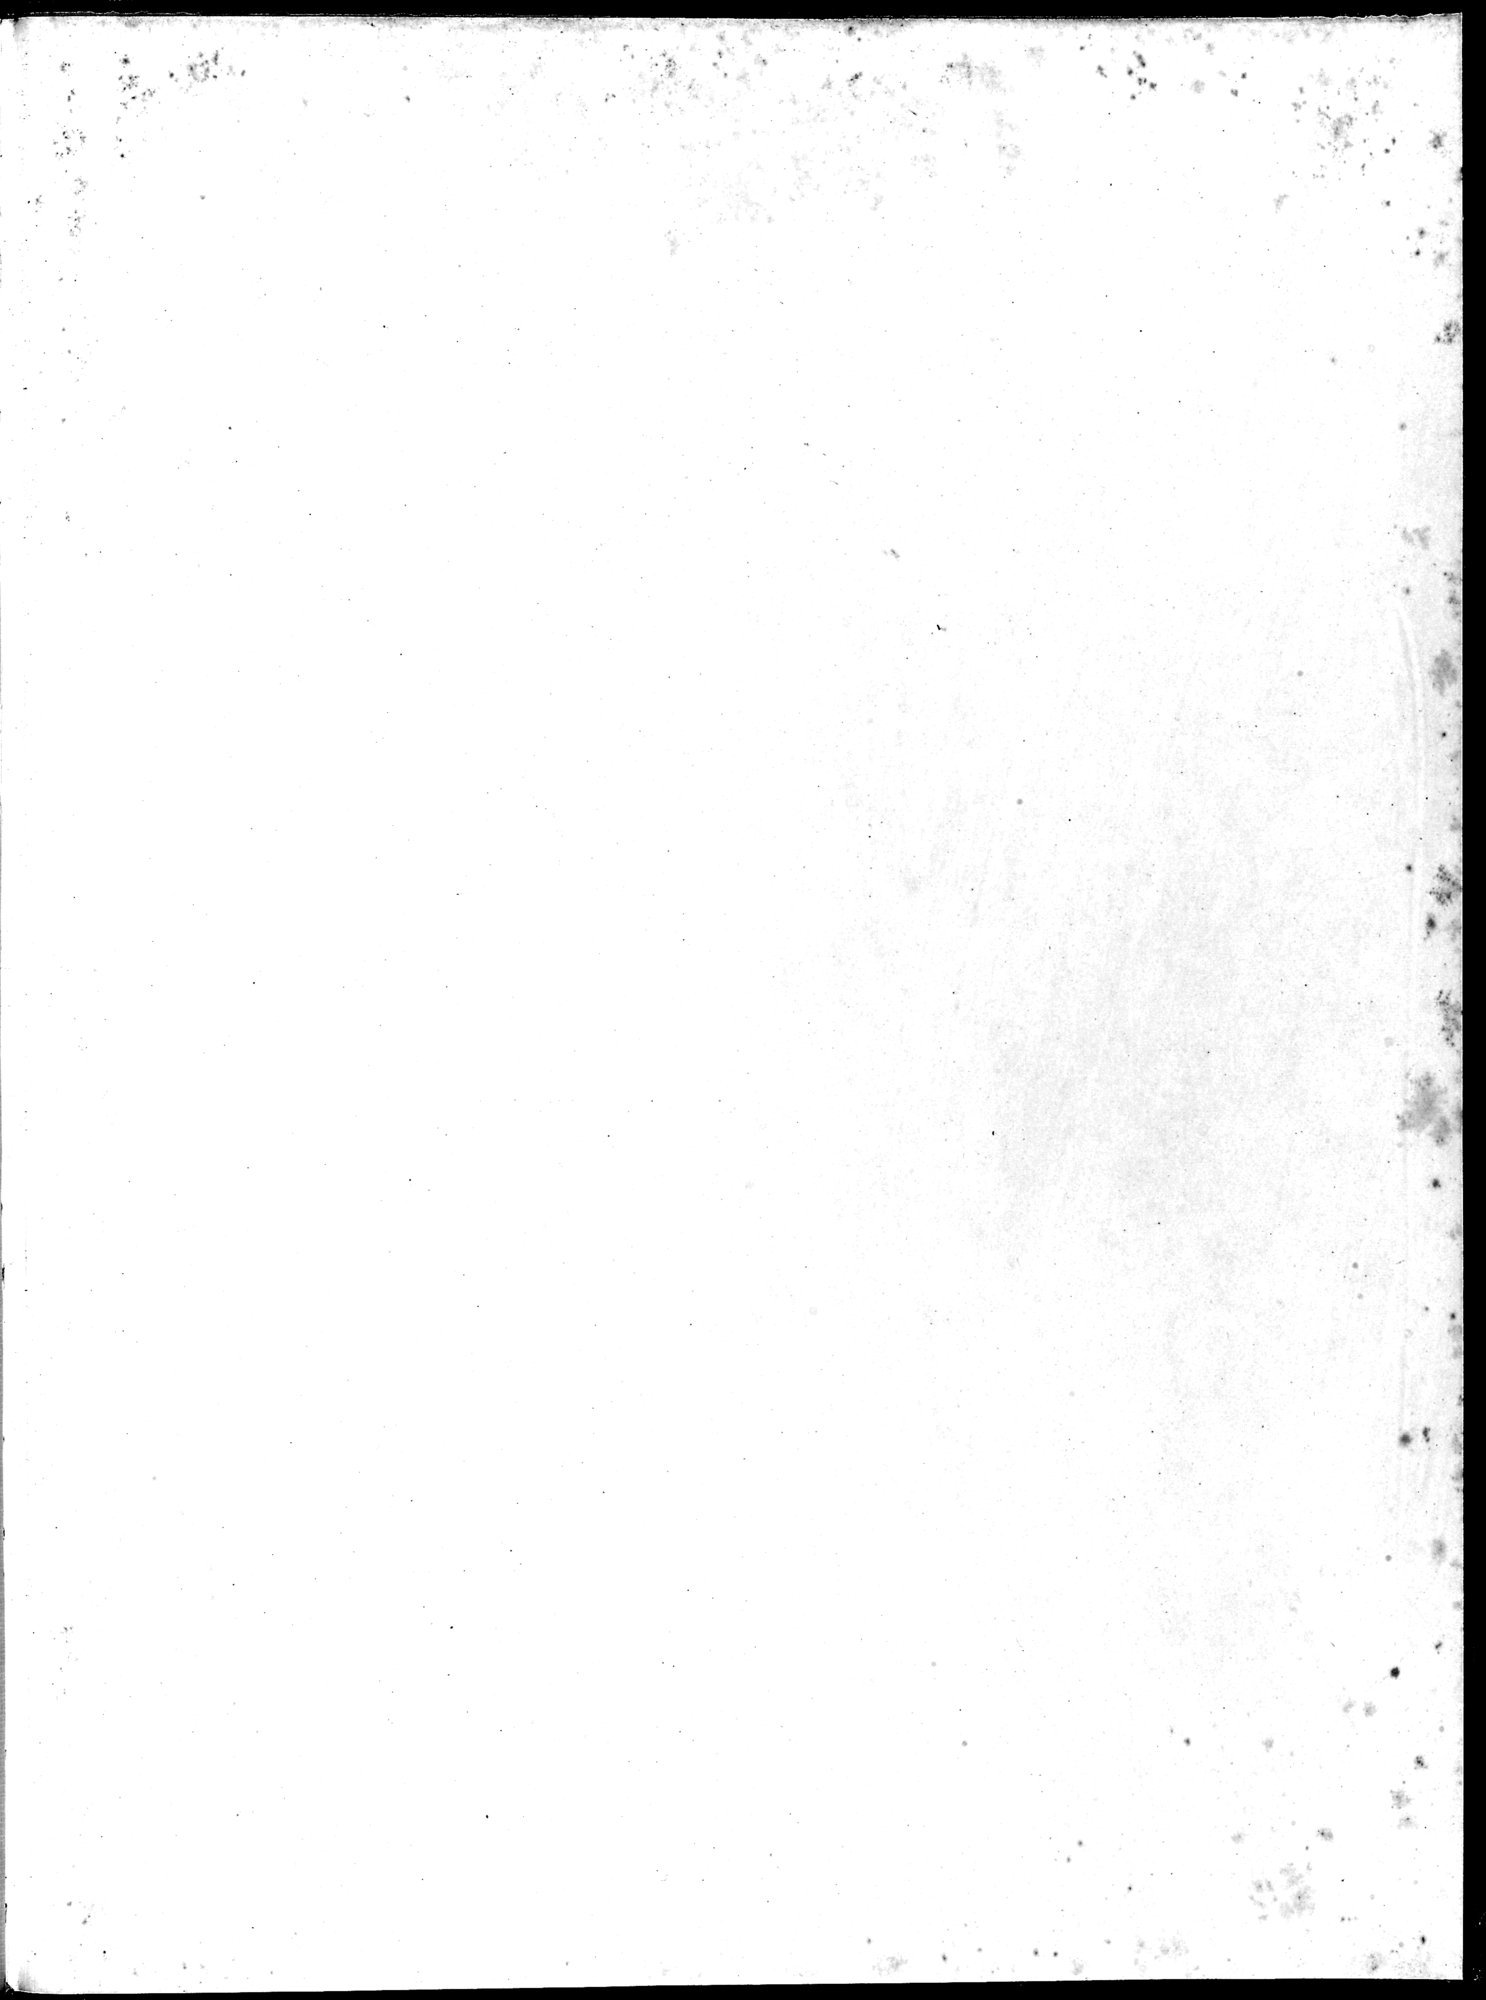 Die Buddhistische Spätantike in Mittelasien : vol.3 / Page 115 (Grayscale High Resolution Image)